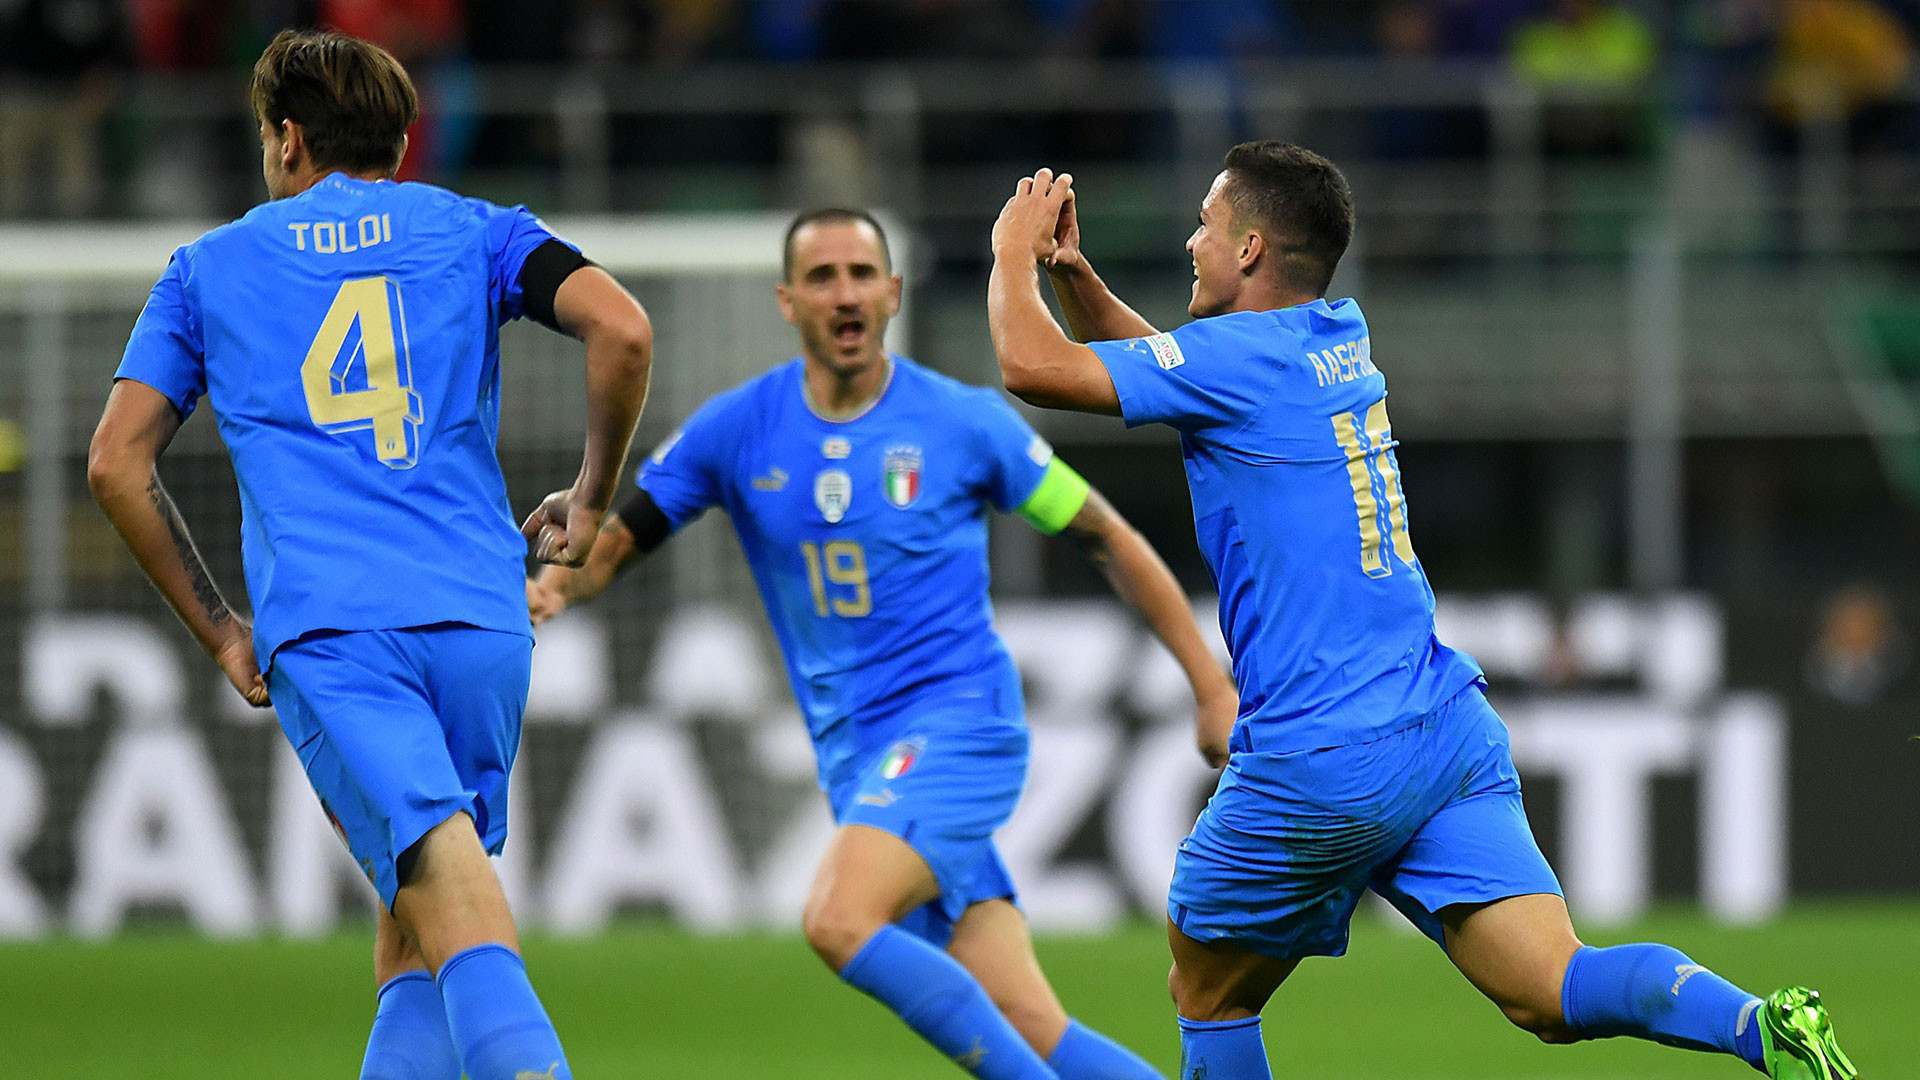 Raspadori segna, Donnarumma para tutto: Italia alla Final Four di Nations League